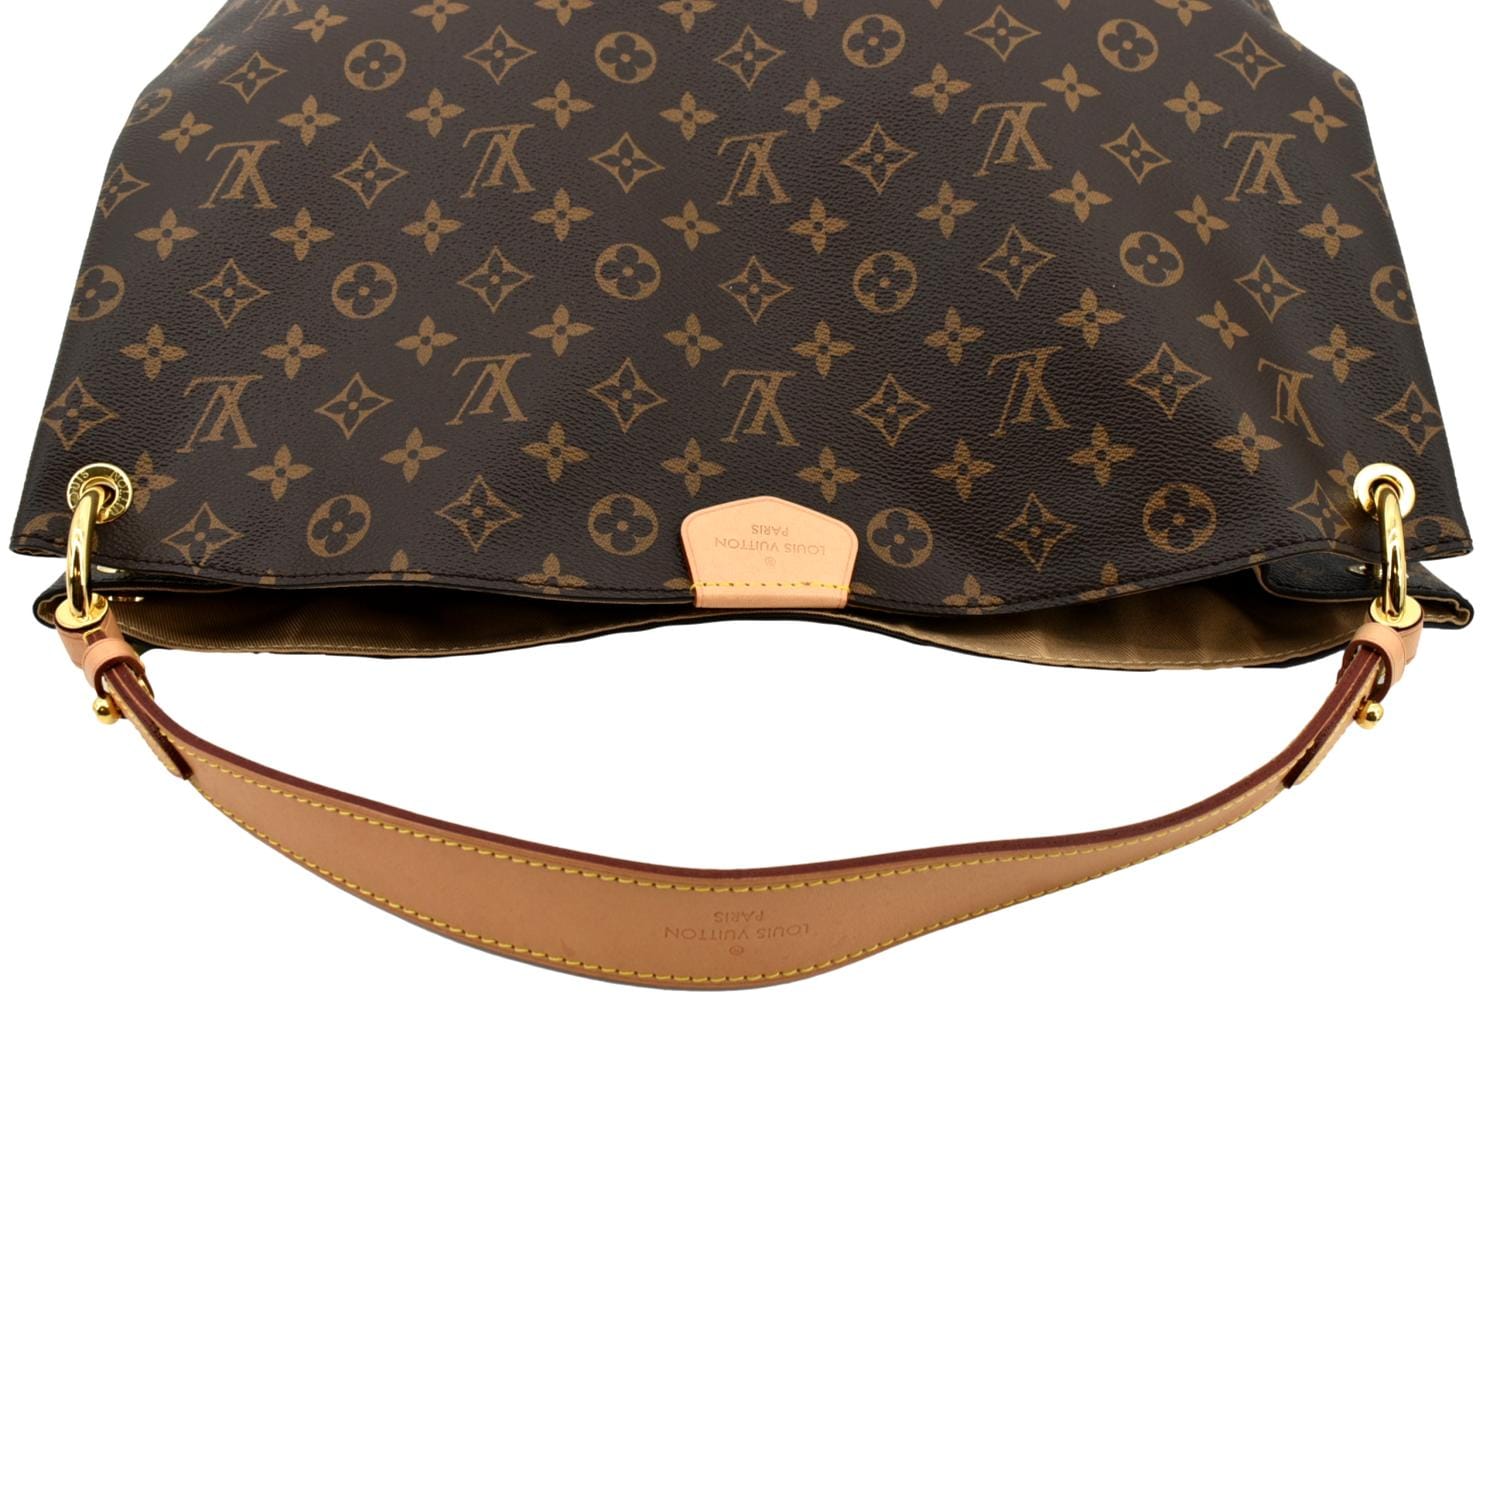 Gorgeous Authentic Louis Vuitton Monogram Graceful MM Hobo Bag